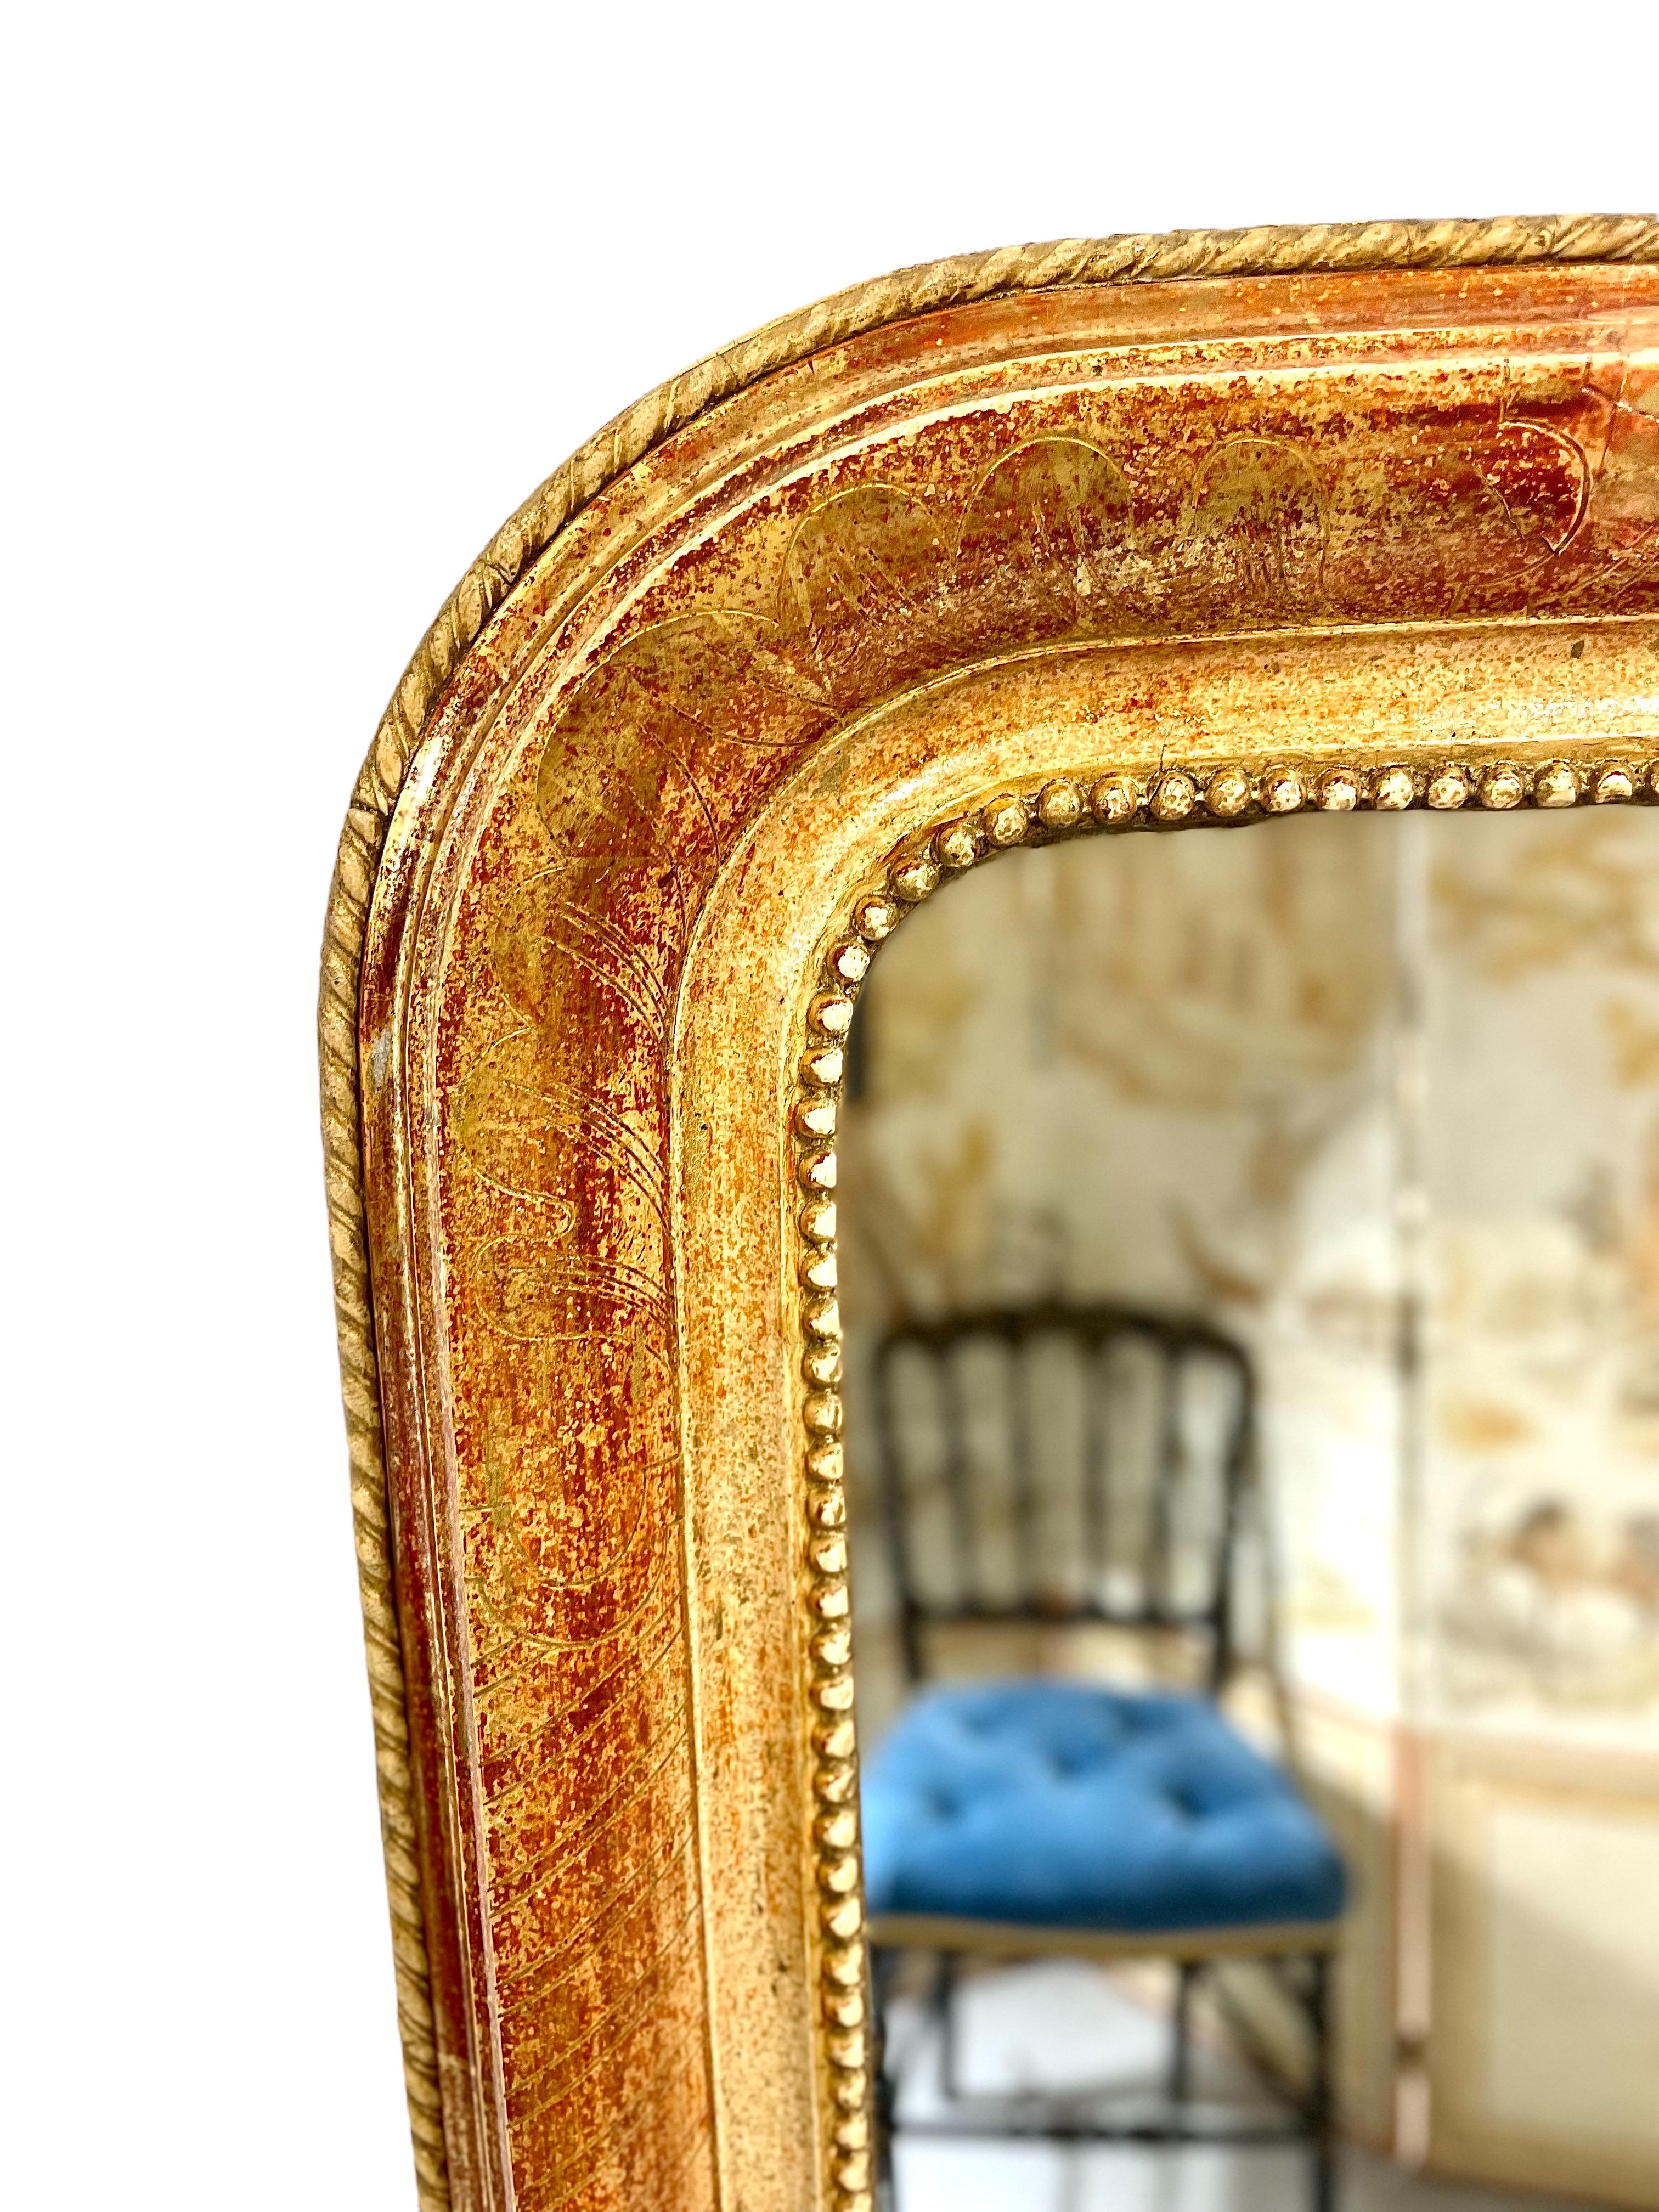 Un elegante espejo Louis Philippe de madera dorada, con las características esquinas superiores redondeadas que tanto recuerdan a la época. El borde interior del marco está adornado con un friso de pequeñas 